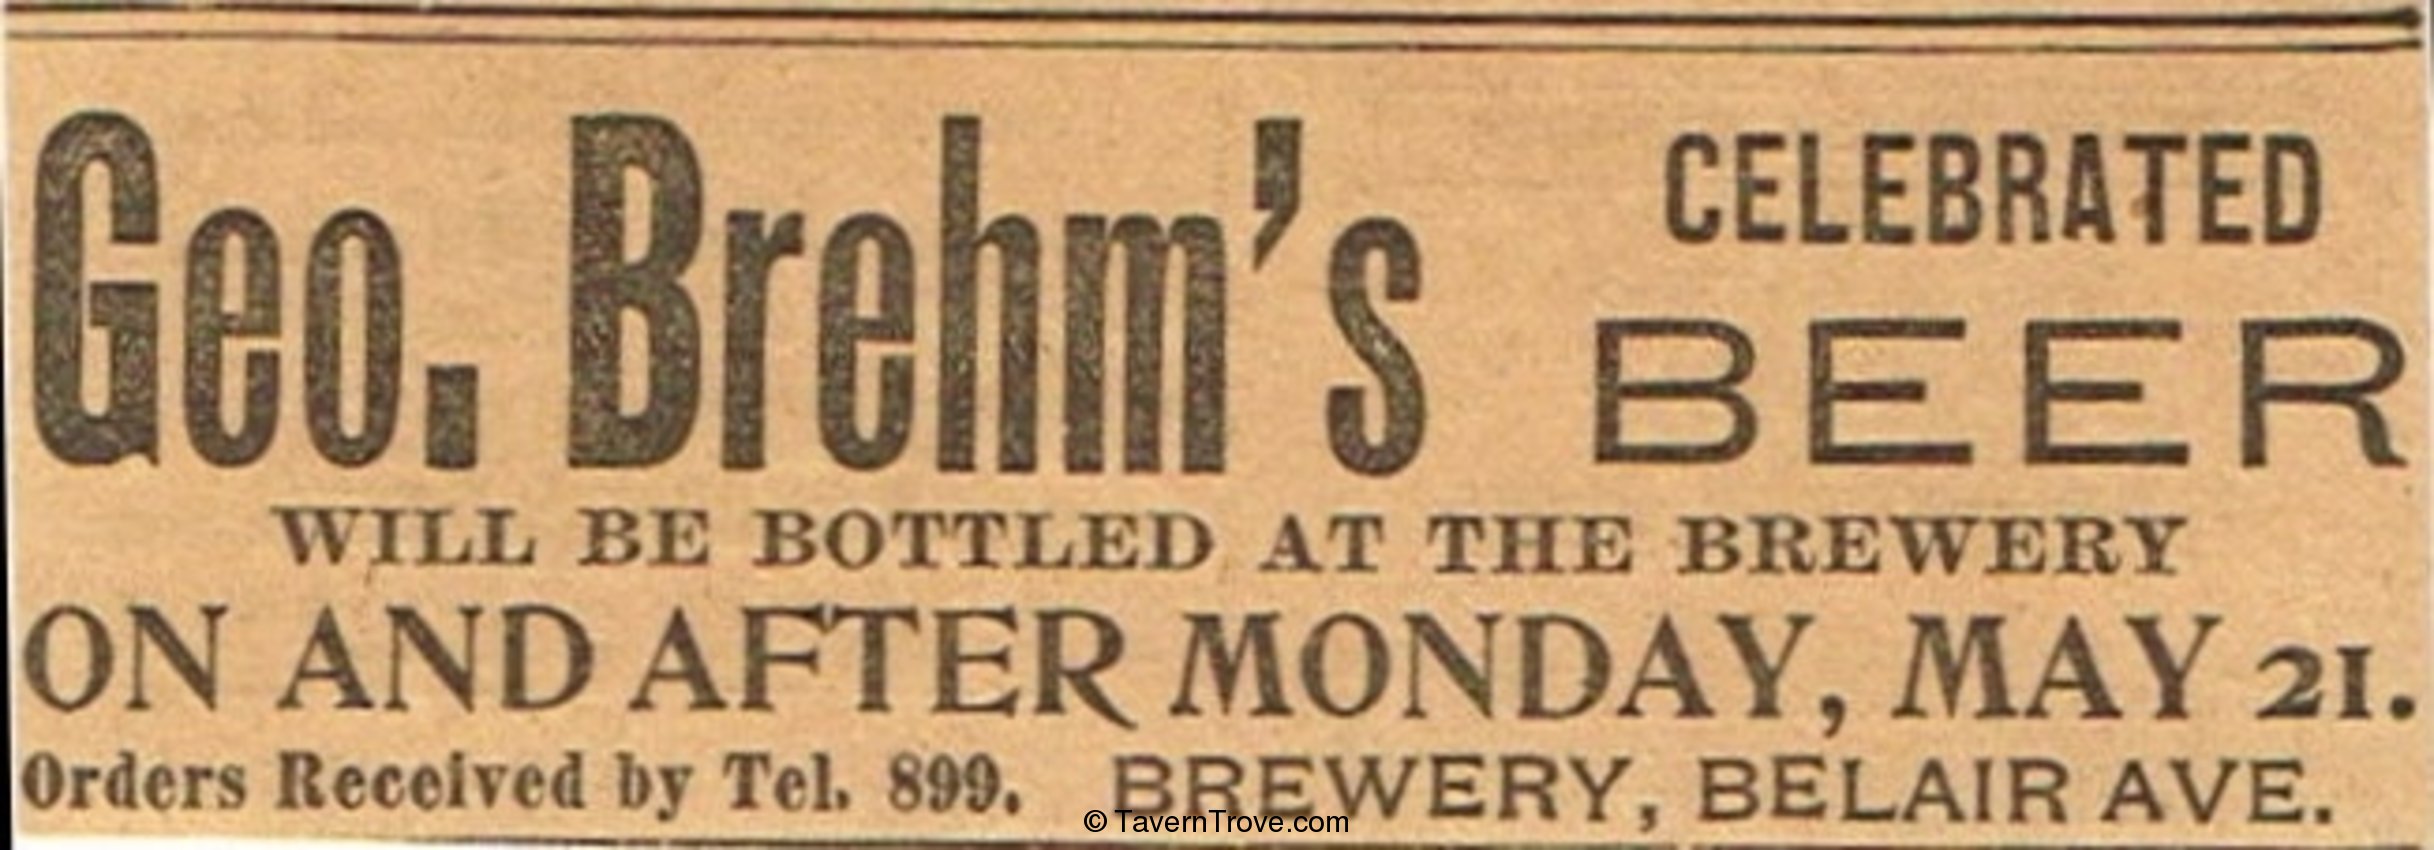 George Brehm's Celebrated Beer